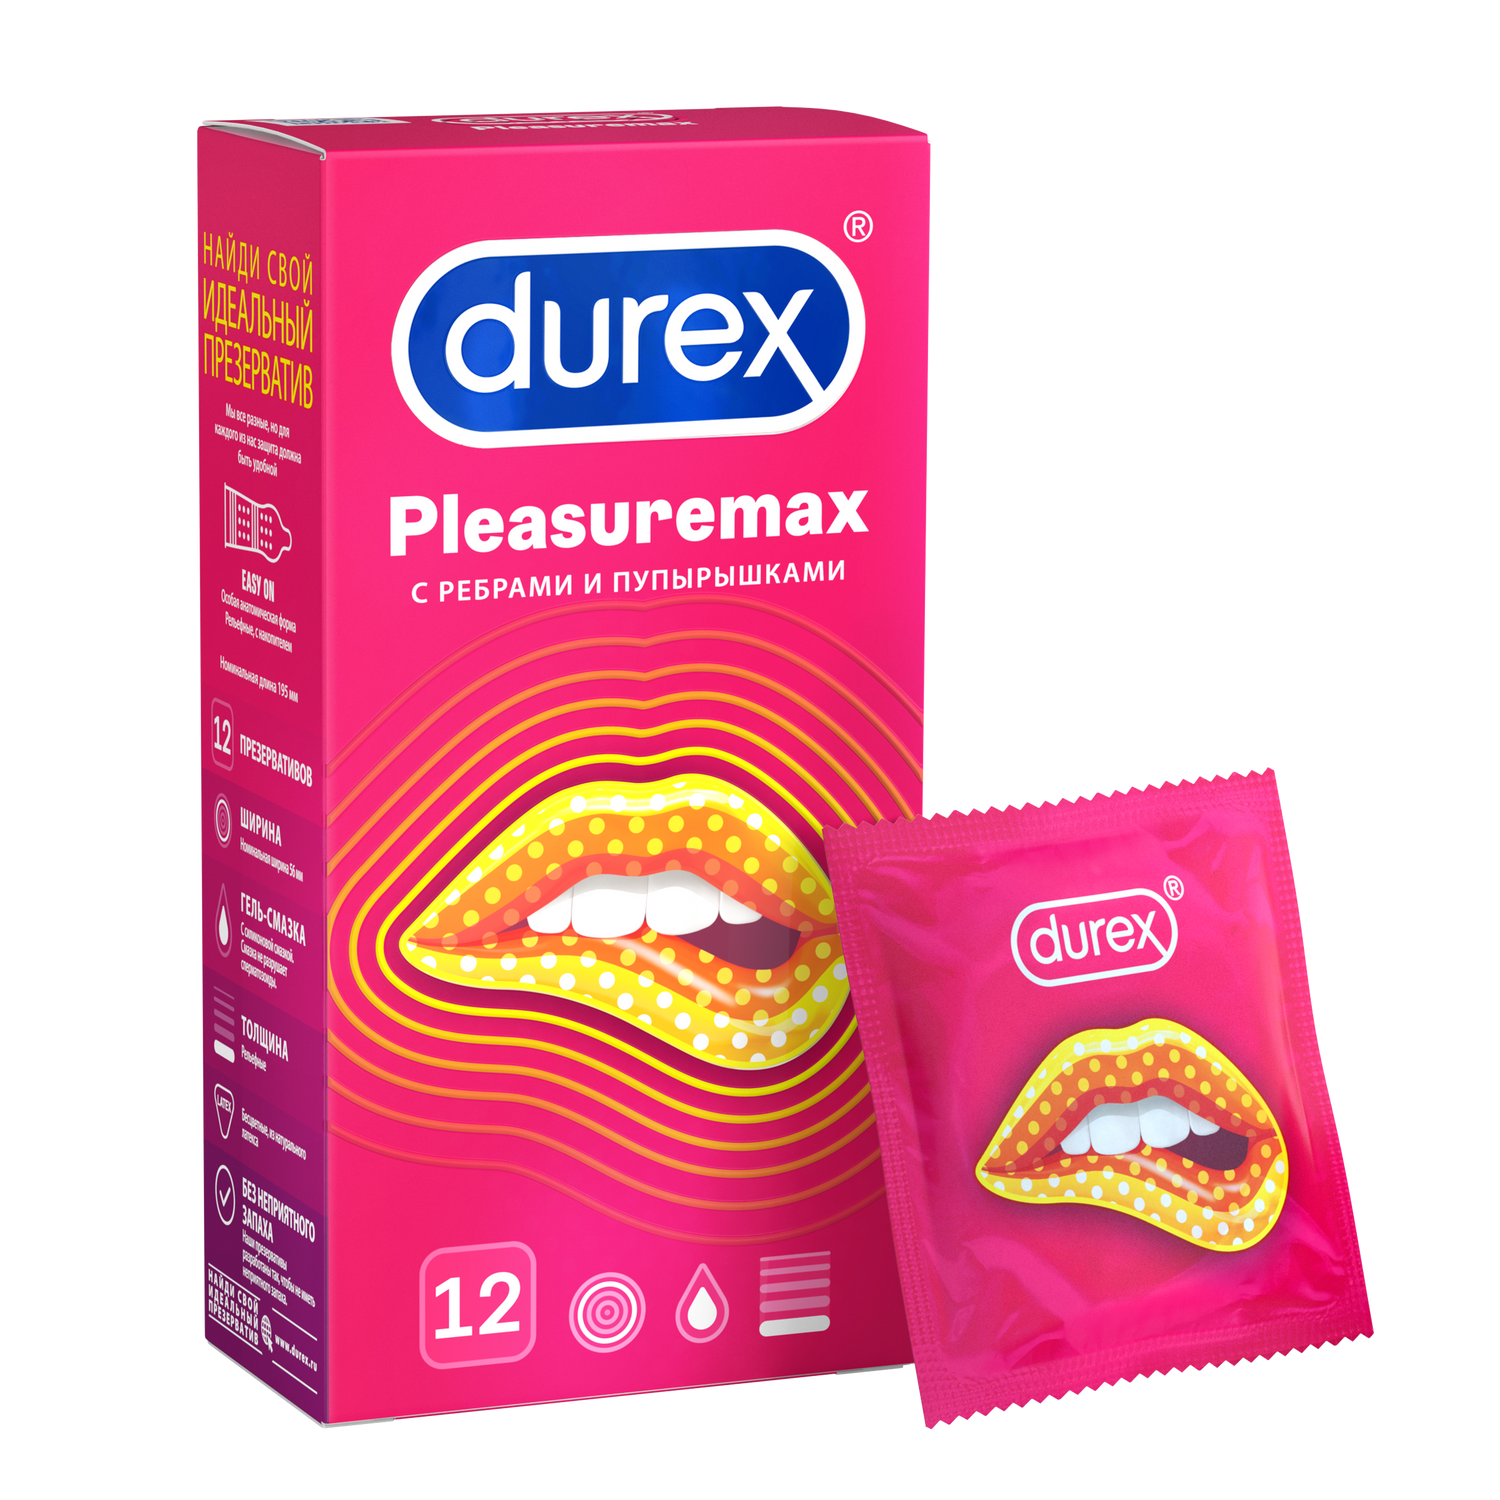 Презервативы Durex PleasureMax с ребрами и пупырышками, 12 шт. презерватив с усиками и пупырышками luxe ultimate хозяин тайги 1 шт 3 уп